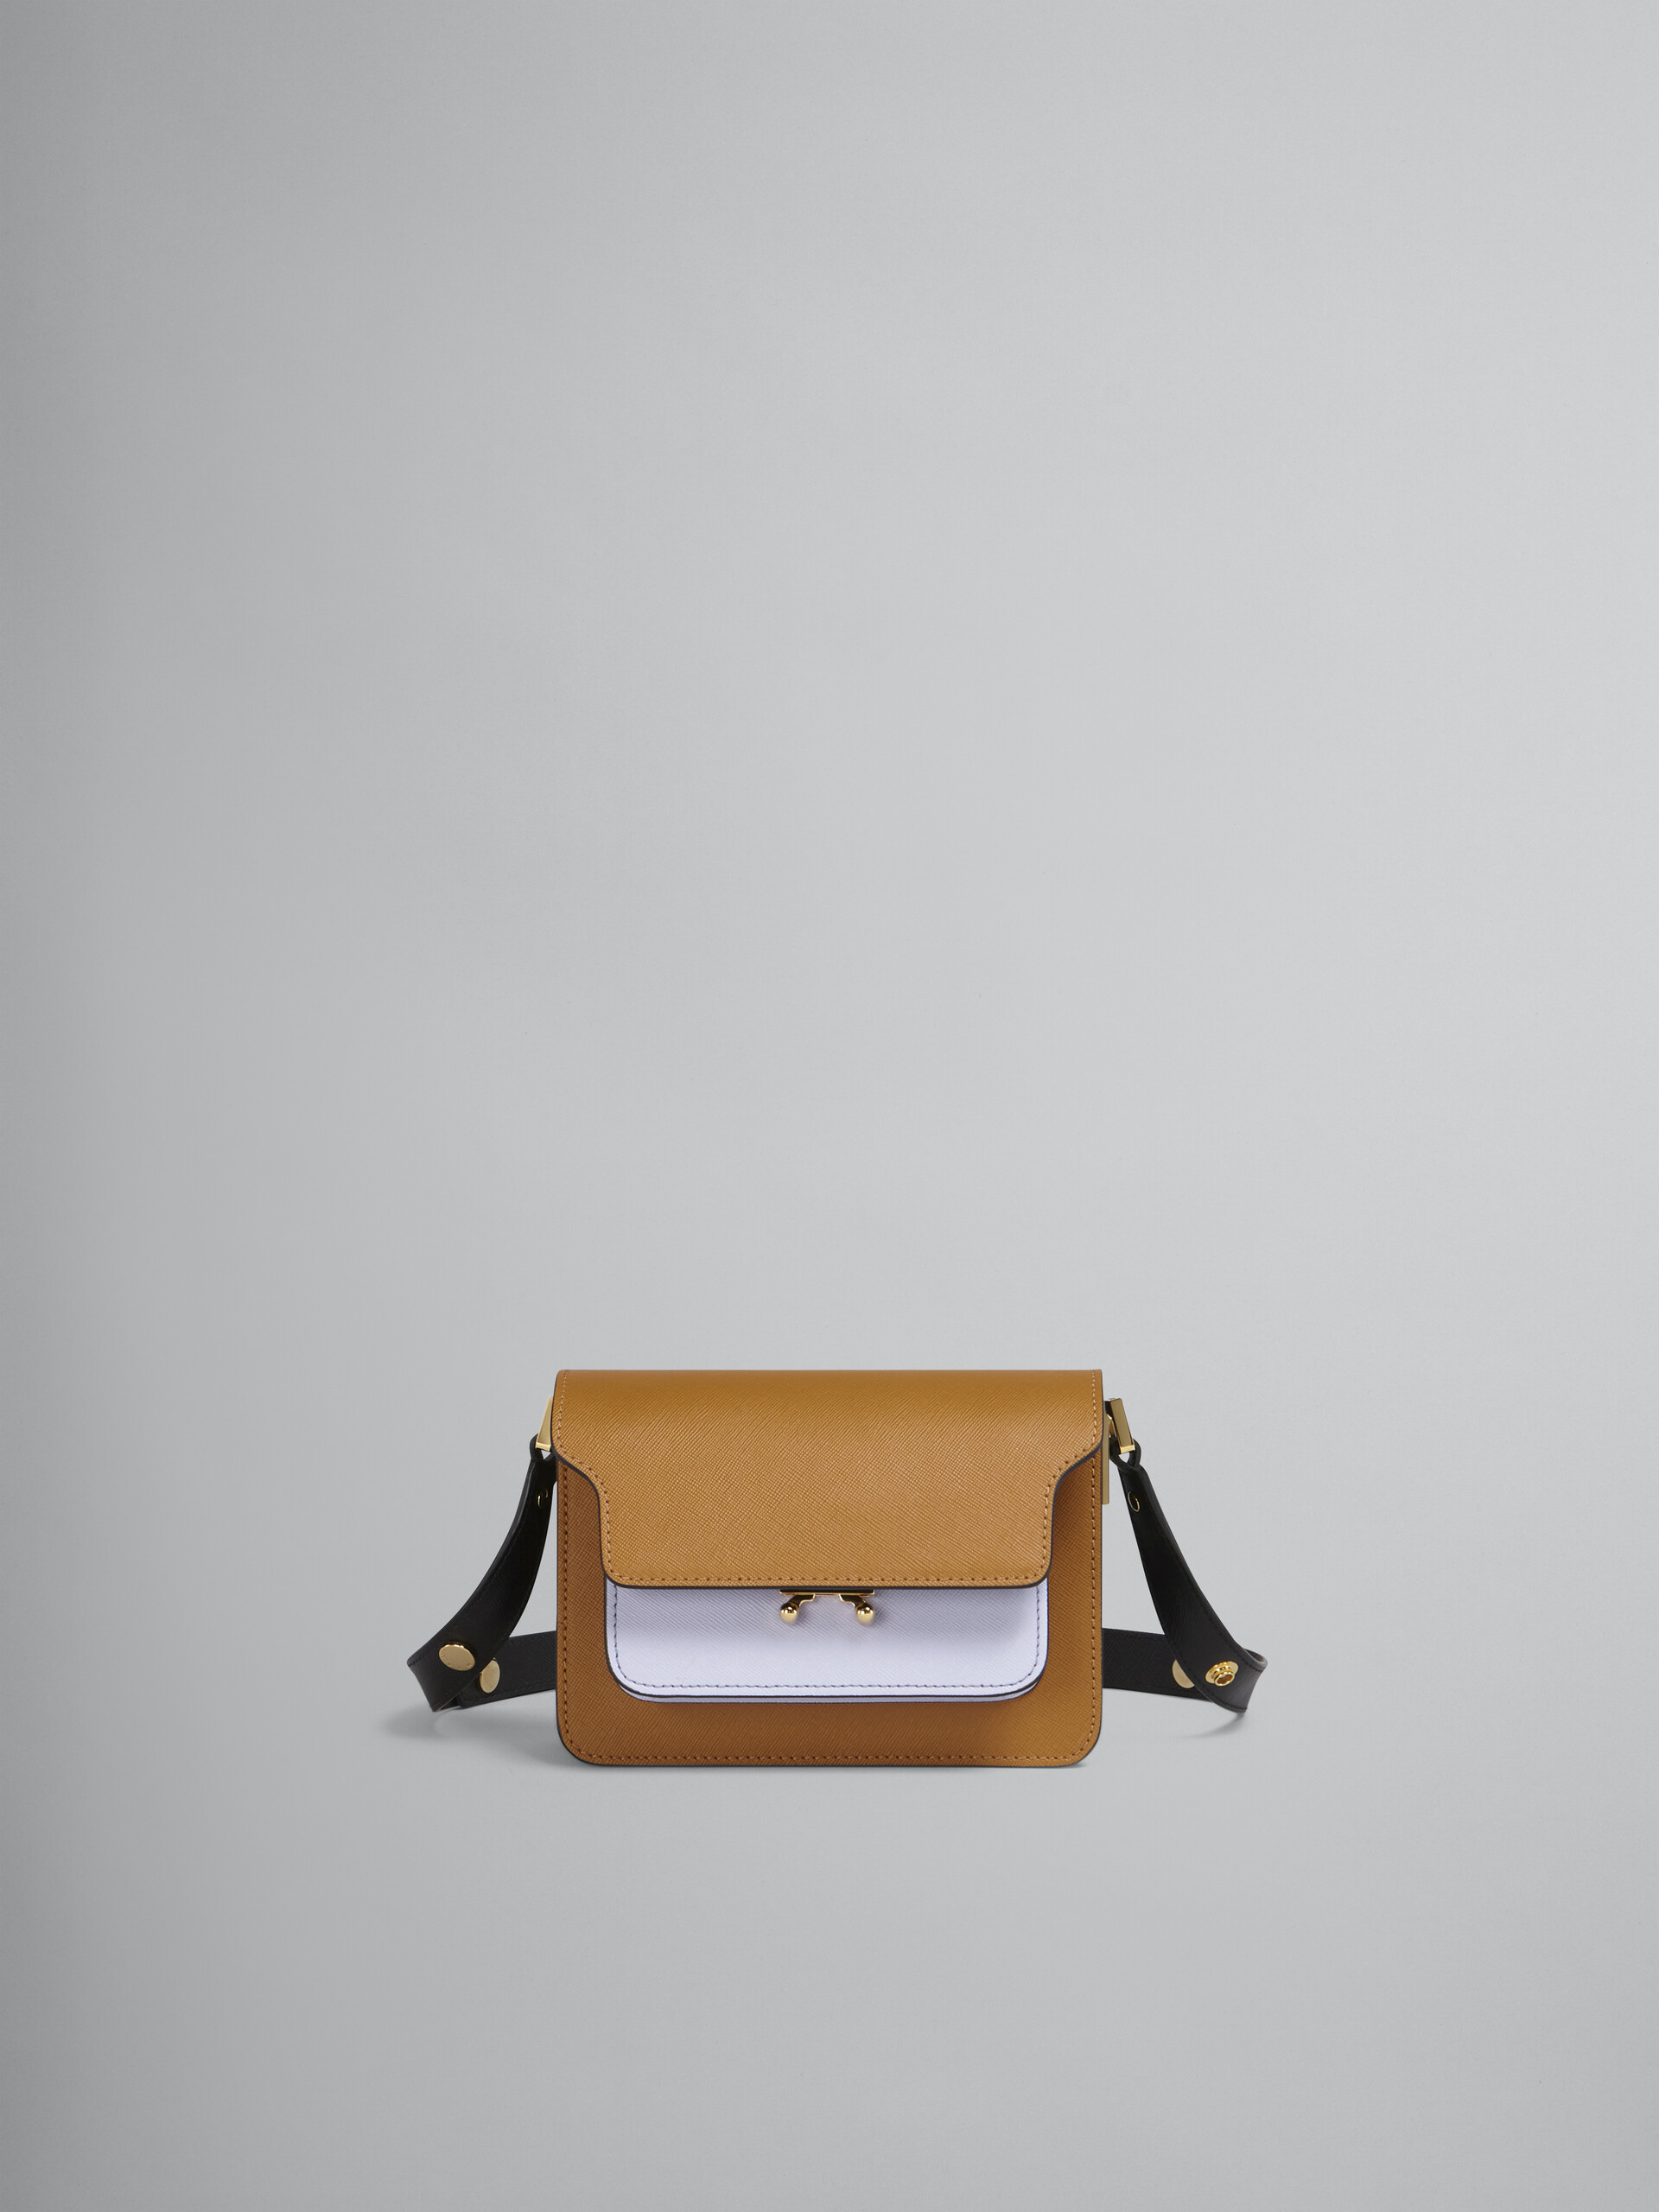 TRUNK bag mini in saffiano marrone lilla e nero - Borse a spalla - Image 1